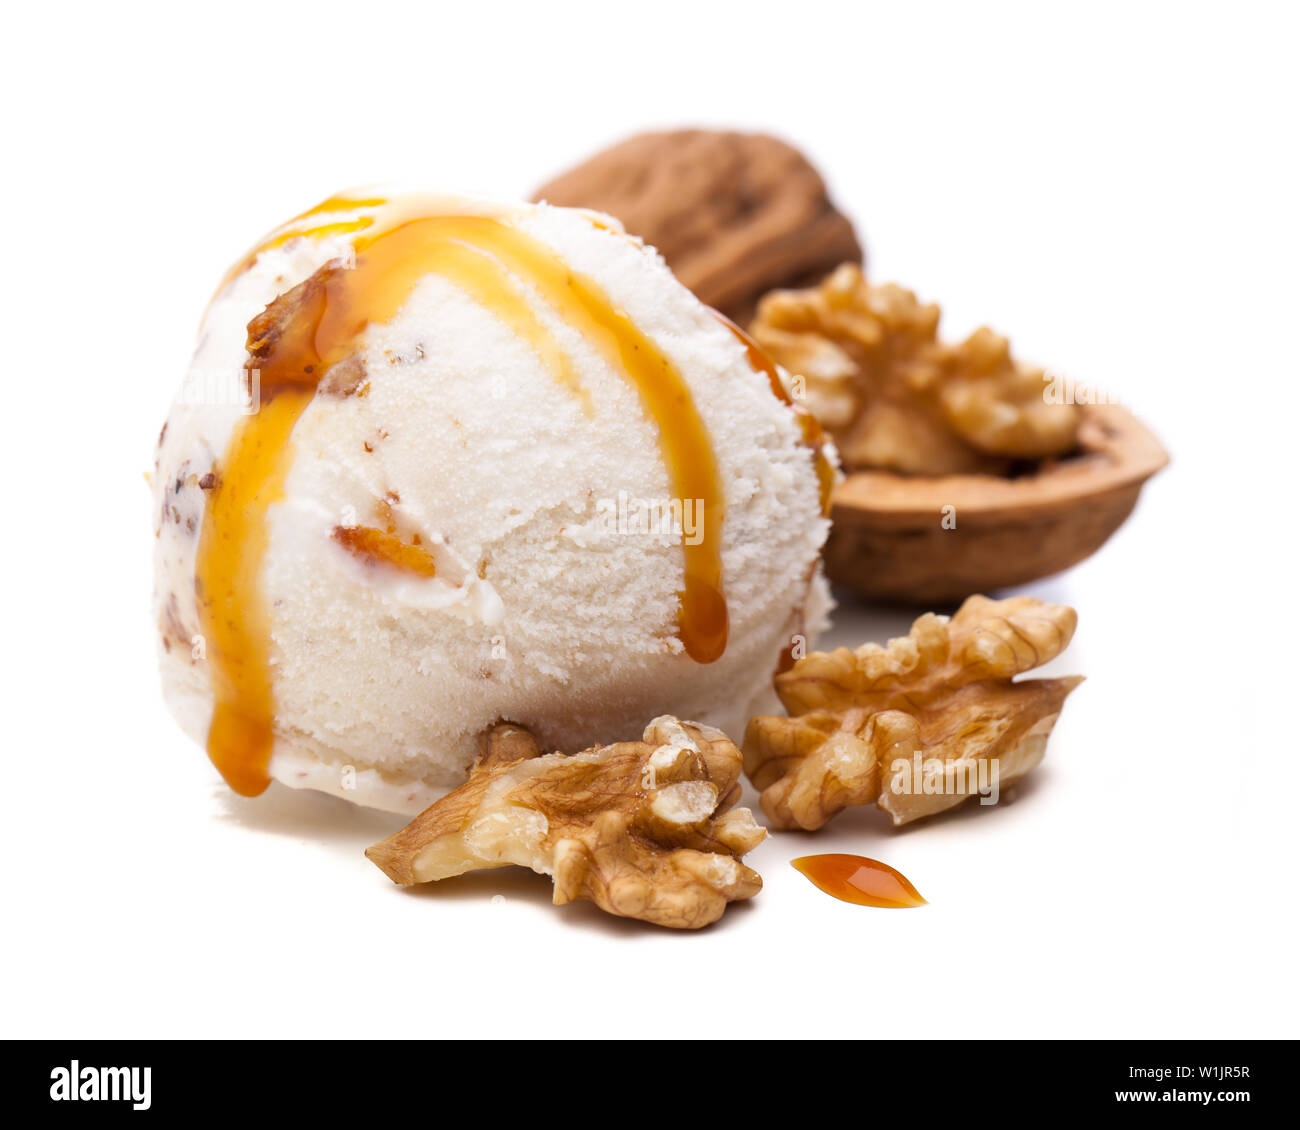 Una bocha de helado de nuez, coronado con salsa de caramelo Foto de stock